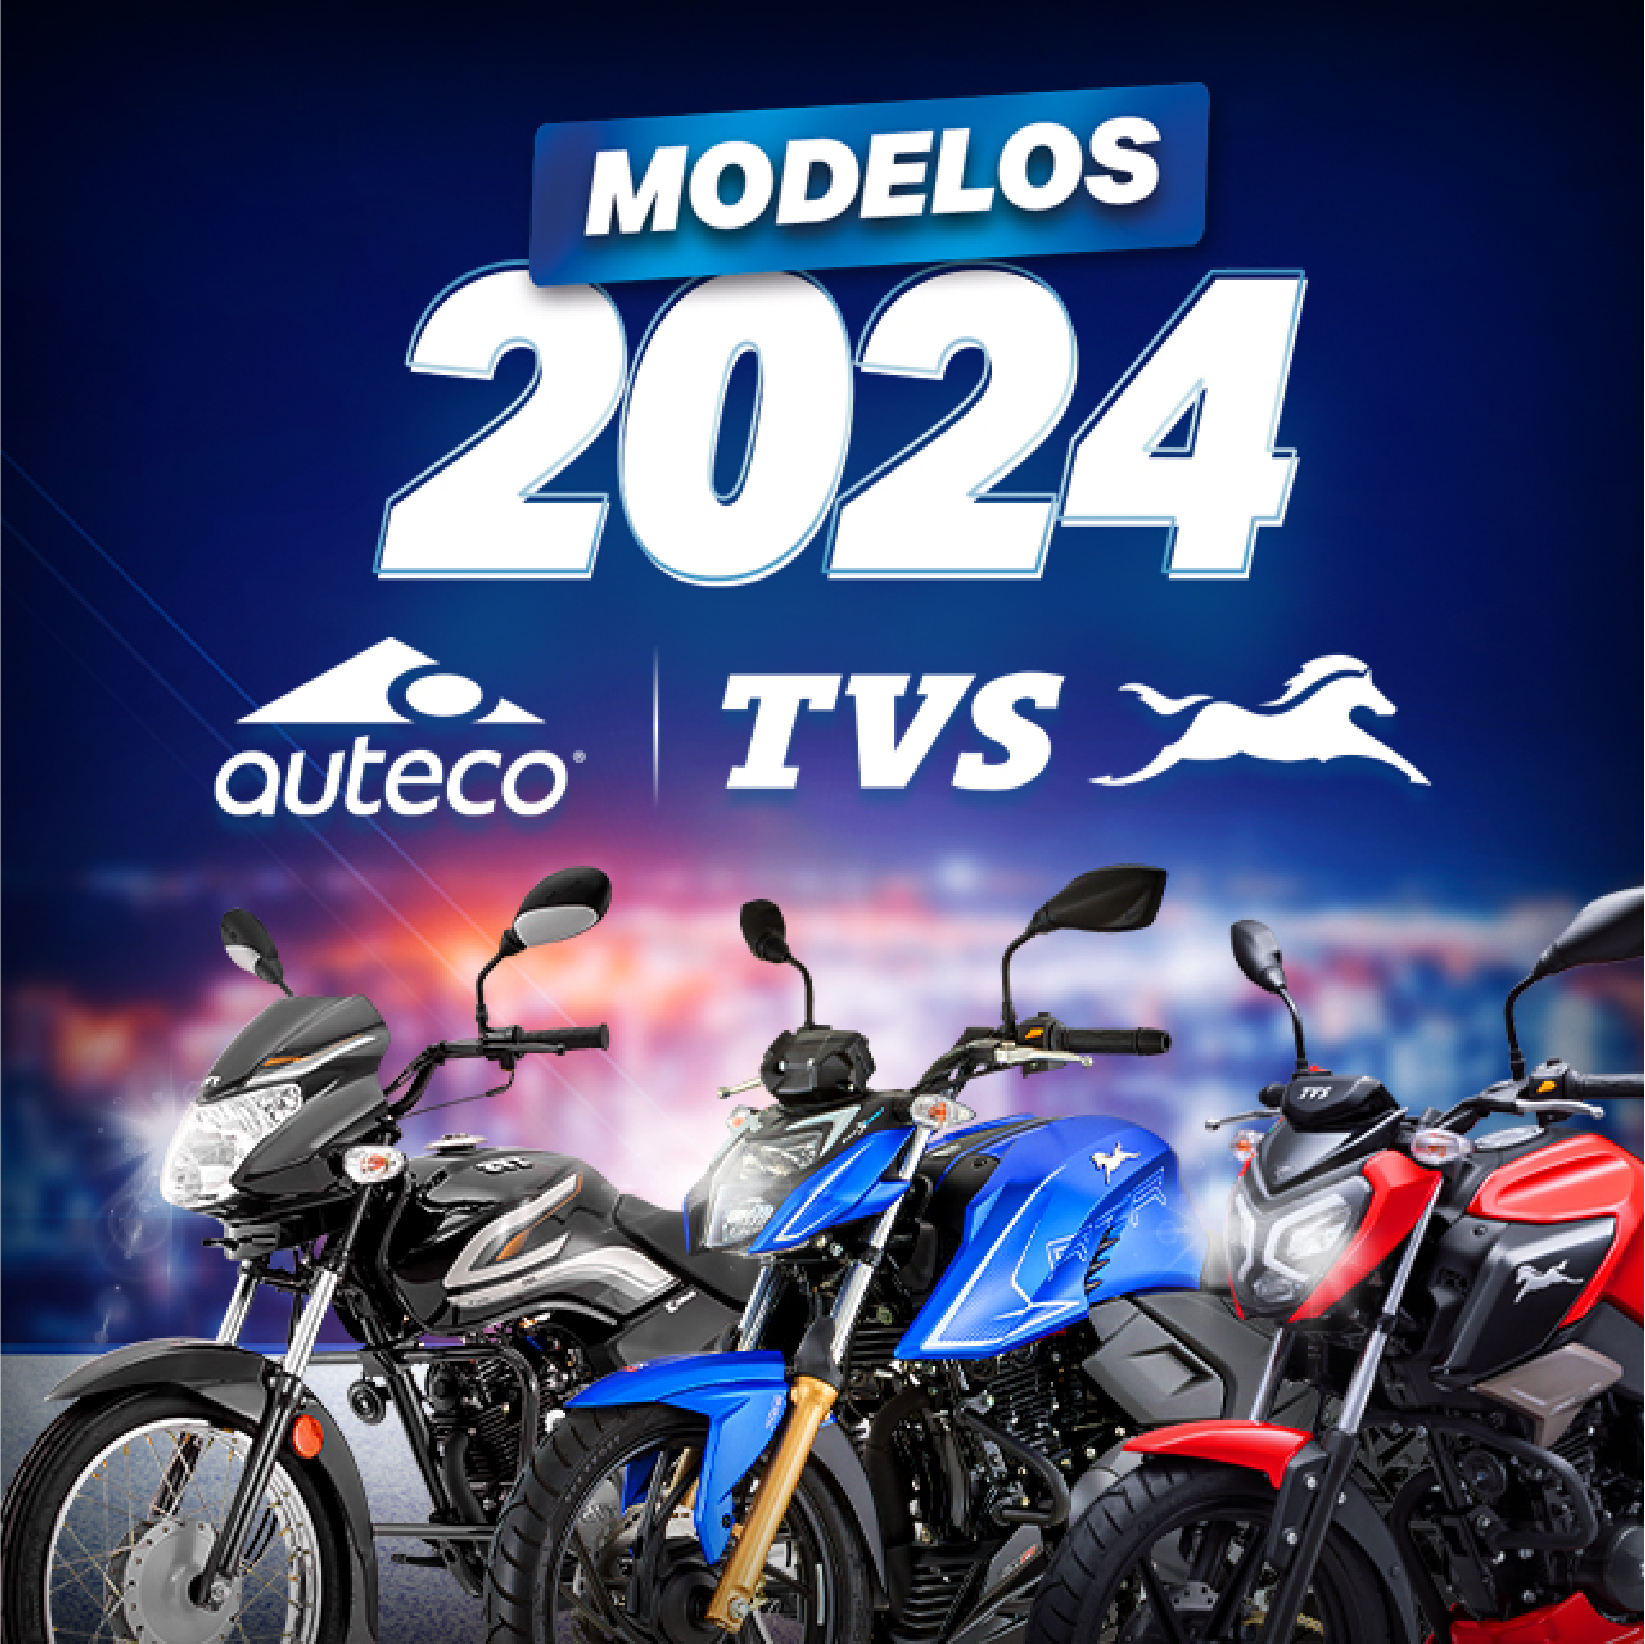 Ahora todas nuestras motos son modelo 2024